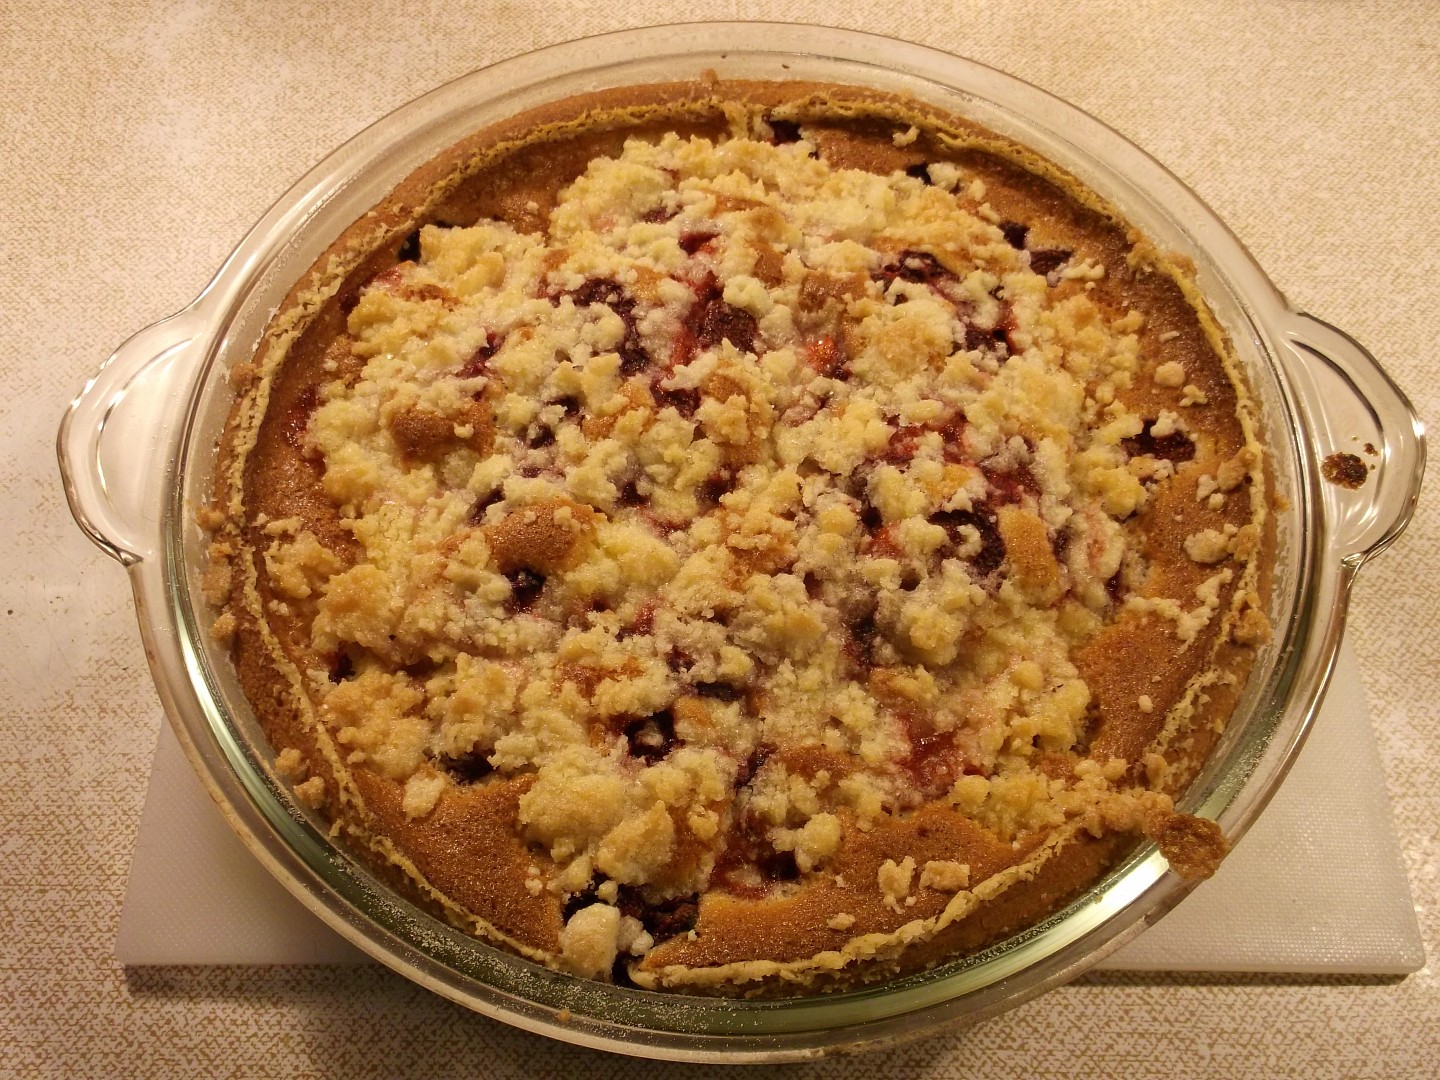 Strawberry Pie - Jahodový koláč s drobením